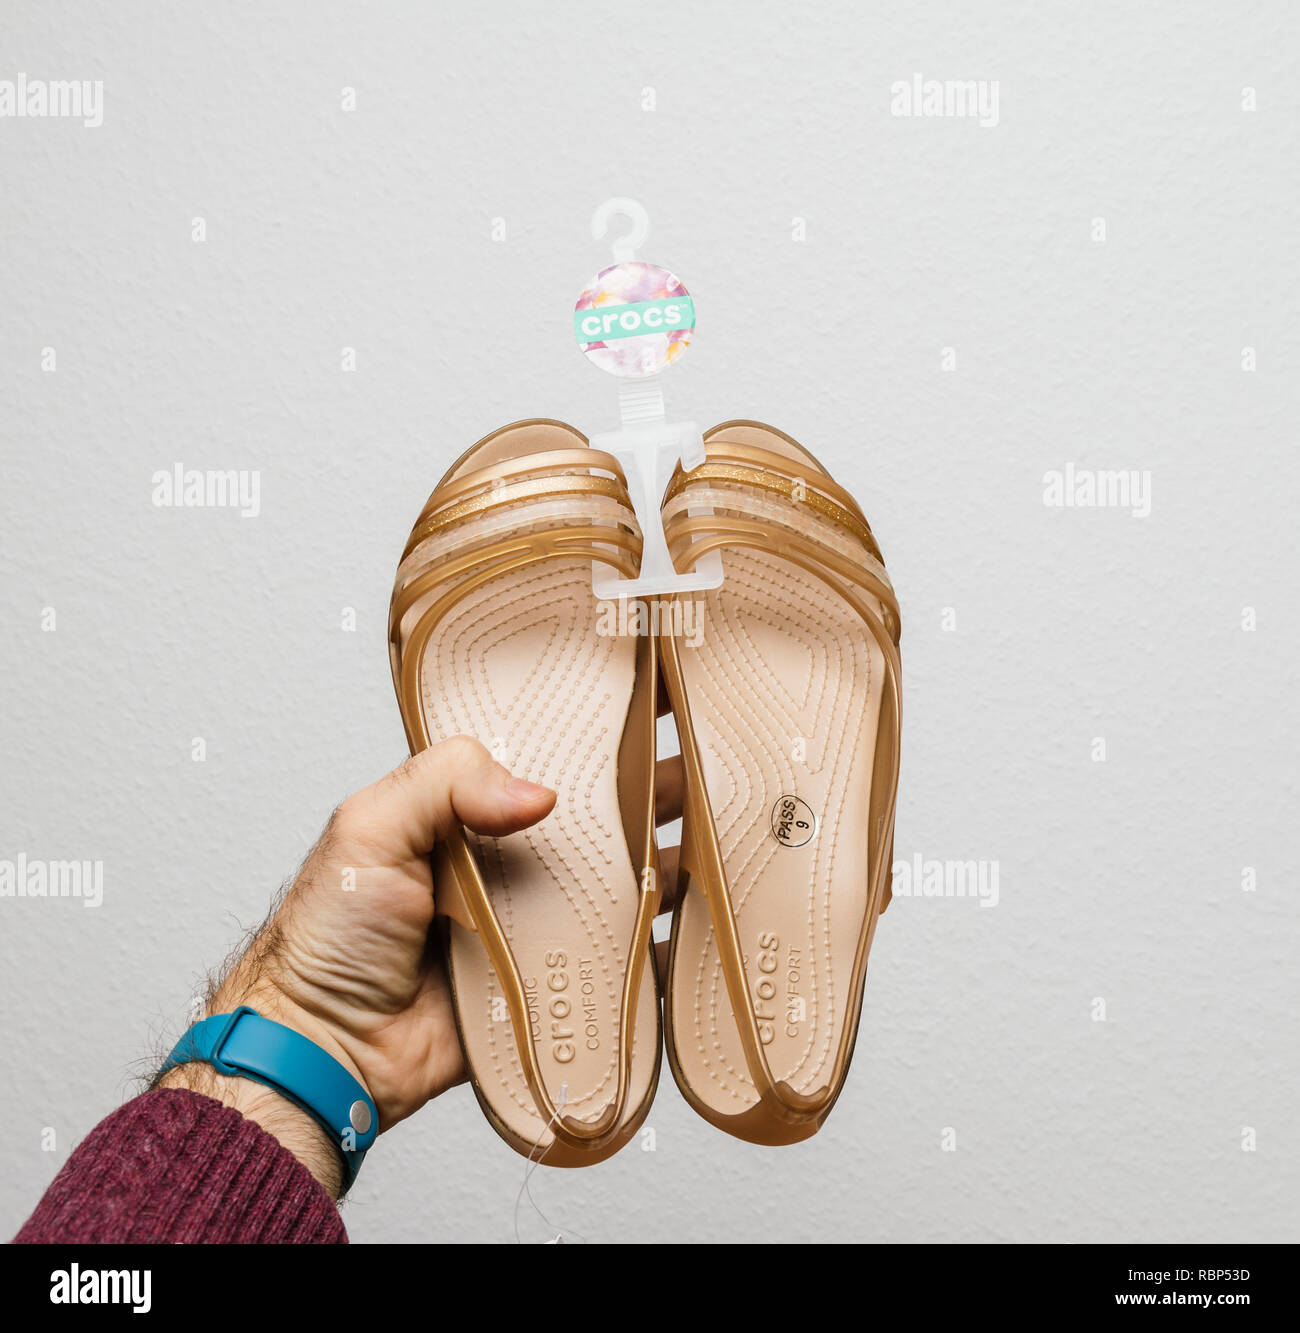 Crocs croc shoes footwear fotografías e imágenes de alta resolución - Alamy